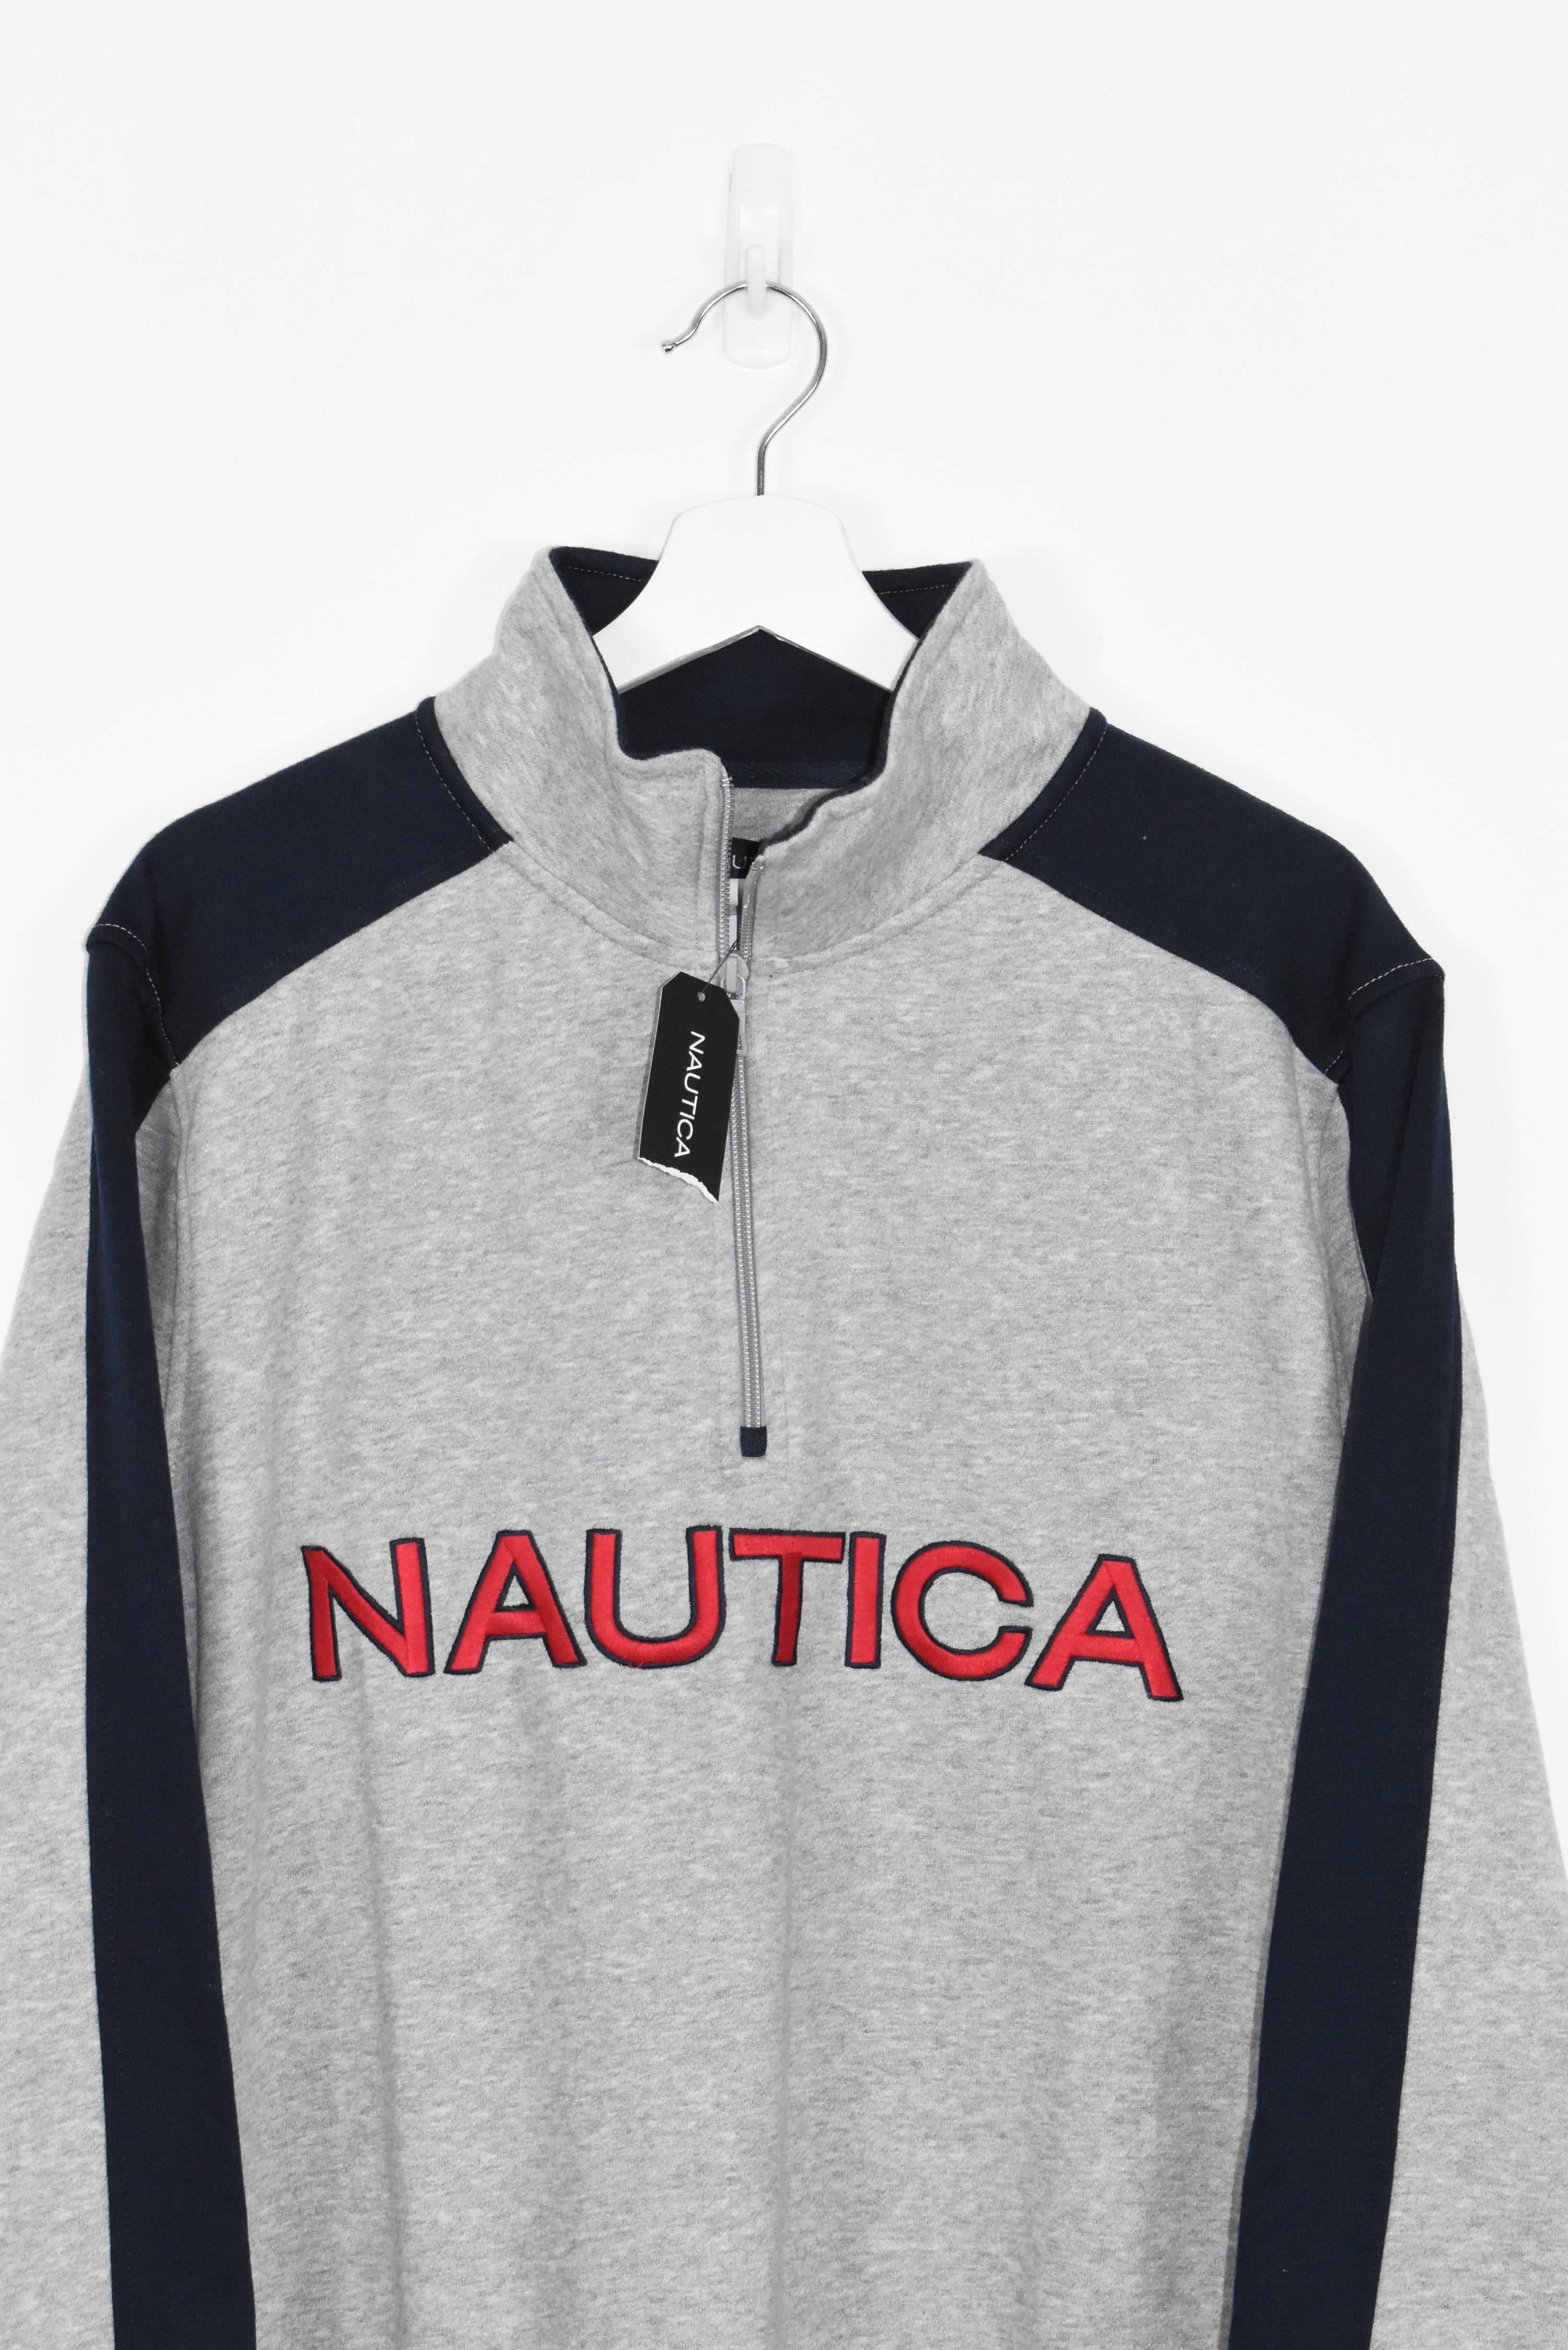 Vintage Nautica Embroidered 1/4 Zip Sweatshirt Large (Baggy)